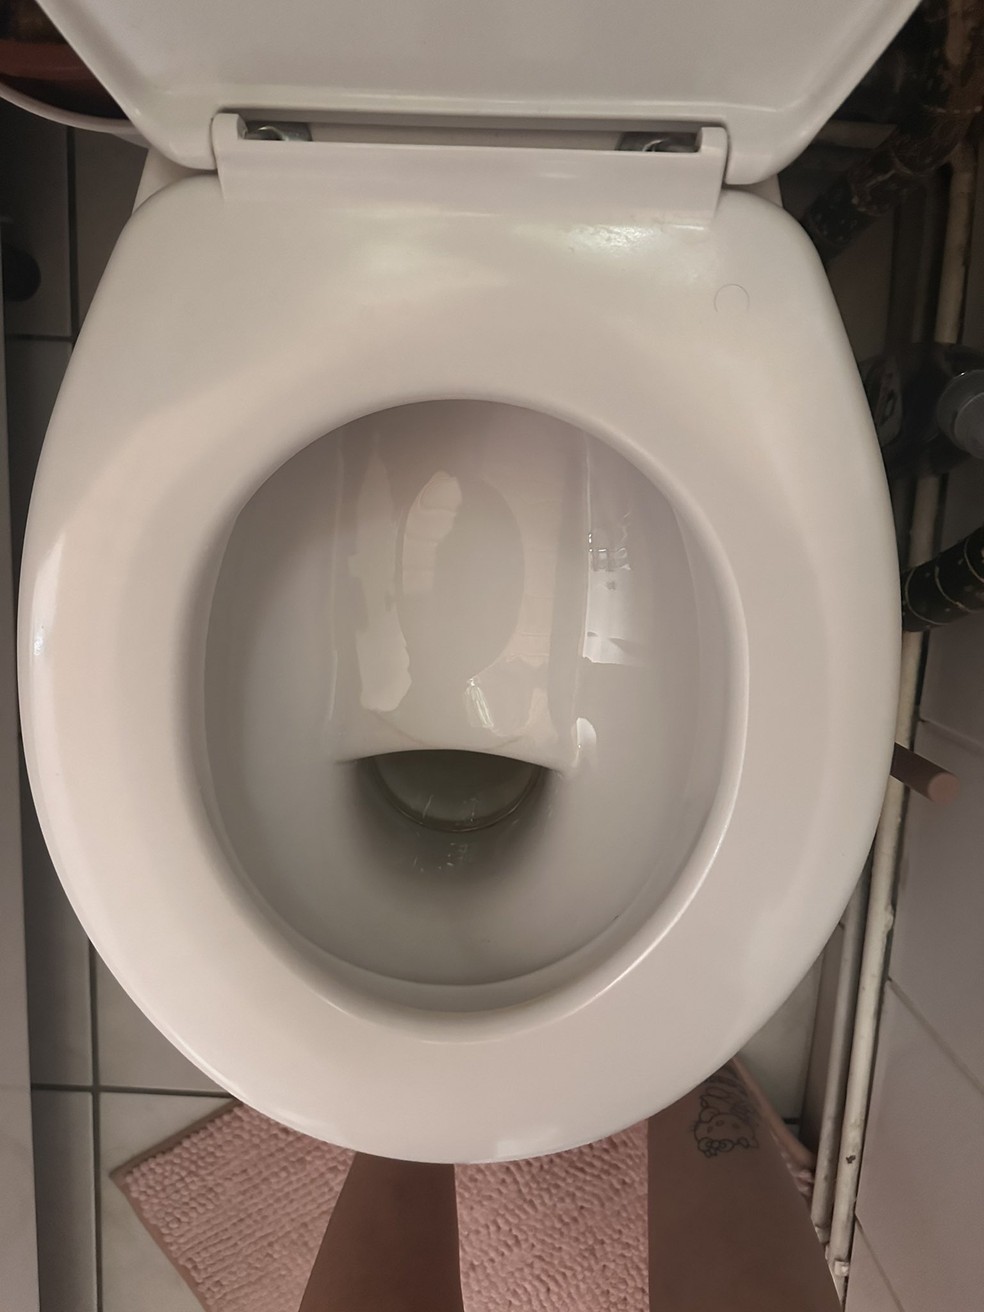 Vaso sanitário com buraco pequeno e superfície alta vira piada na internet — Foto: X / @malfeitona / Reprodução